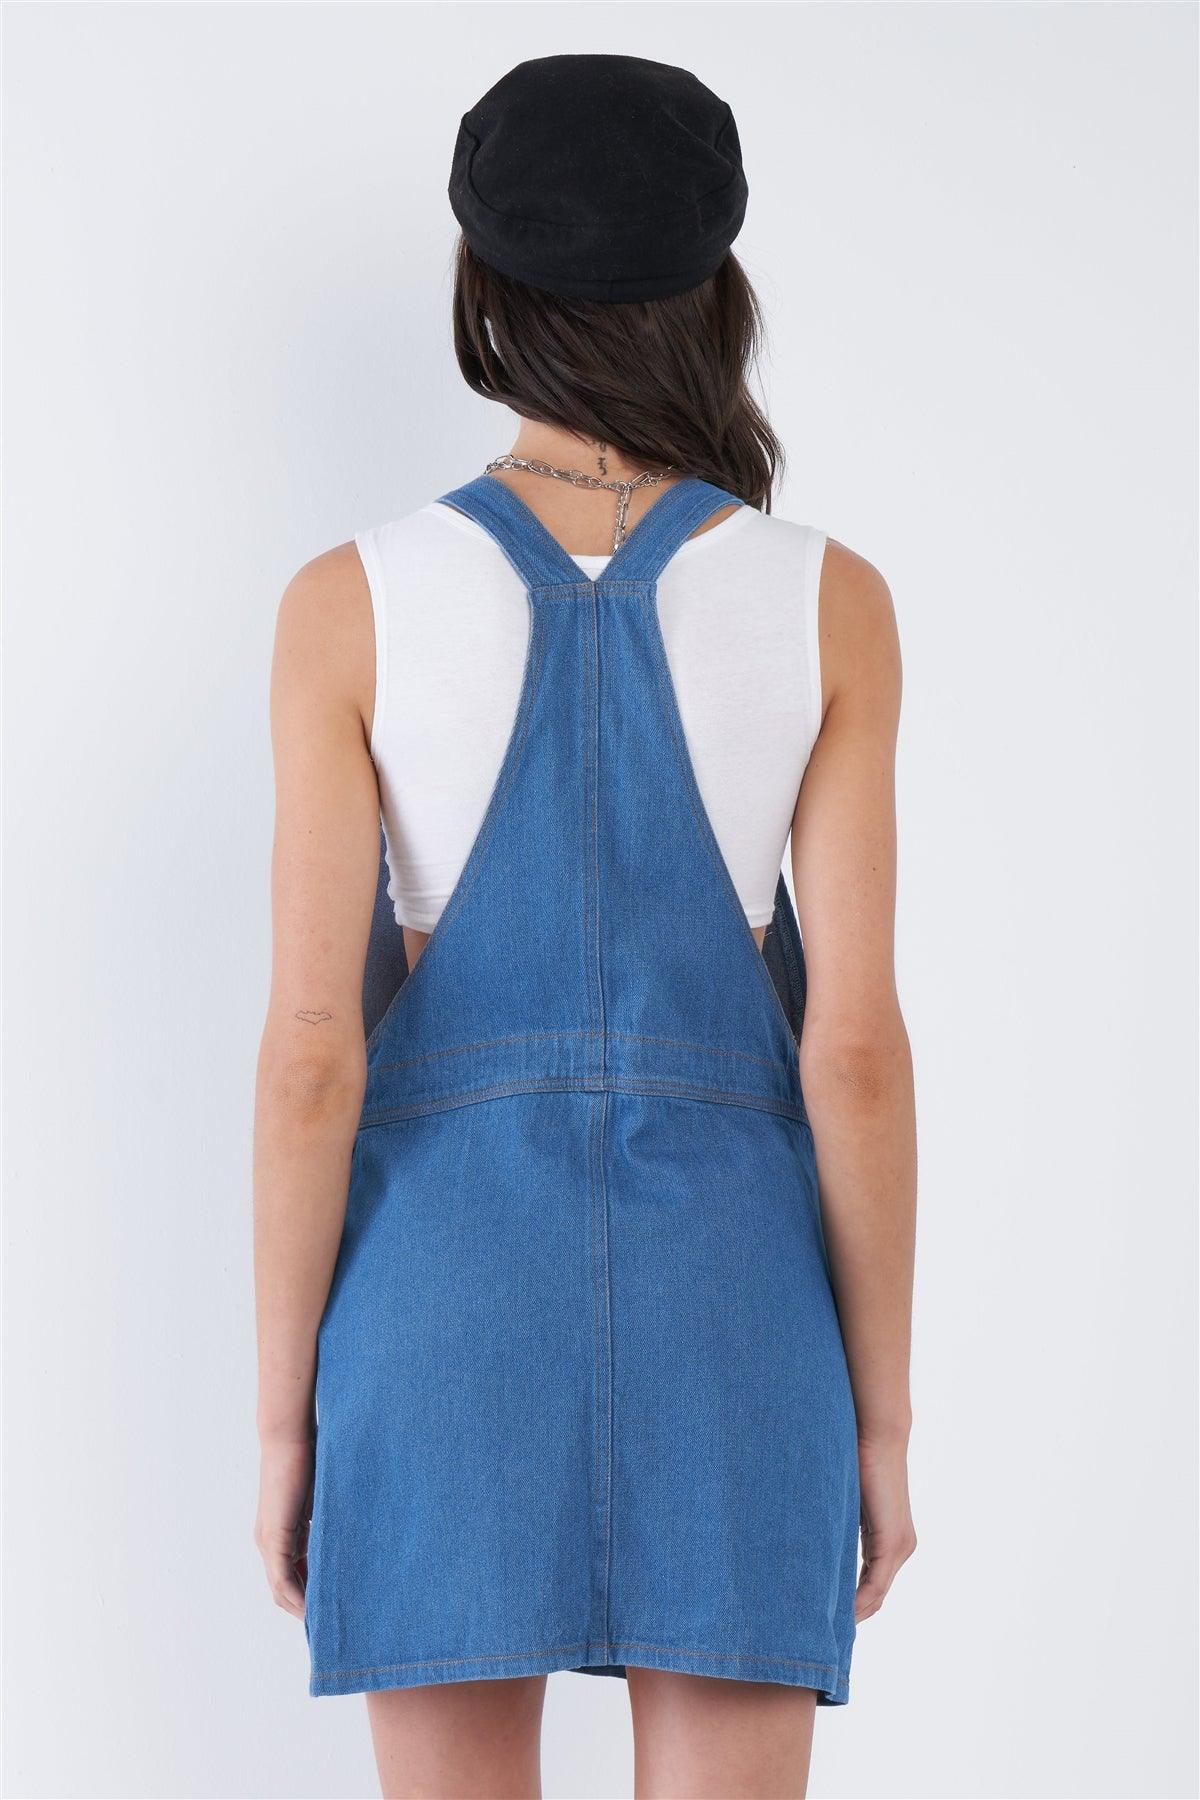 Indigo Blue Cotton Casual Denim Overall Mini Jean Dress /2-2-2